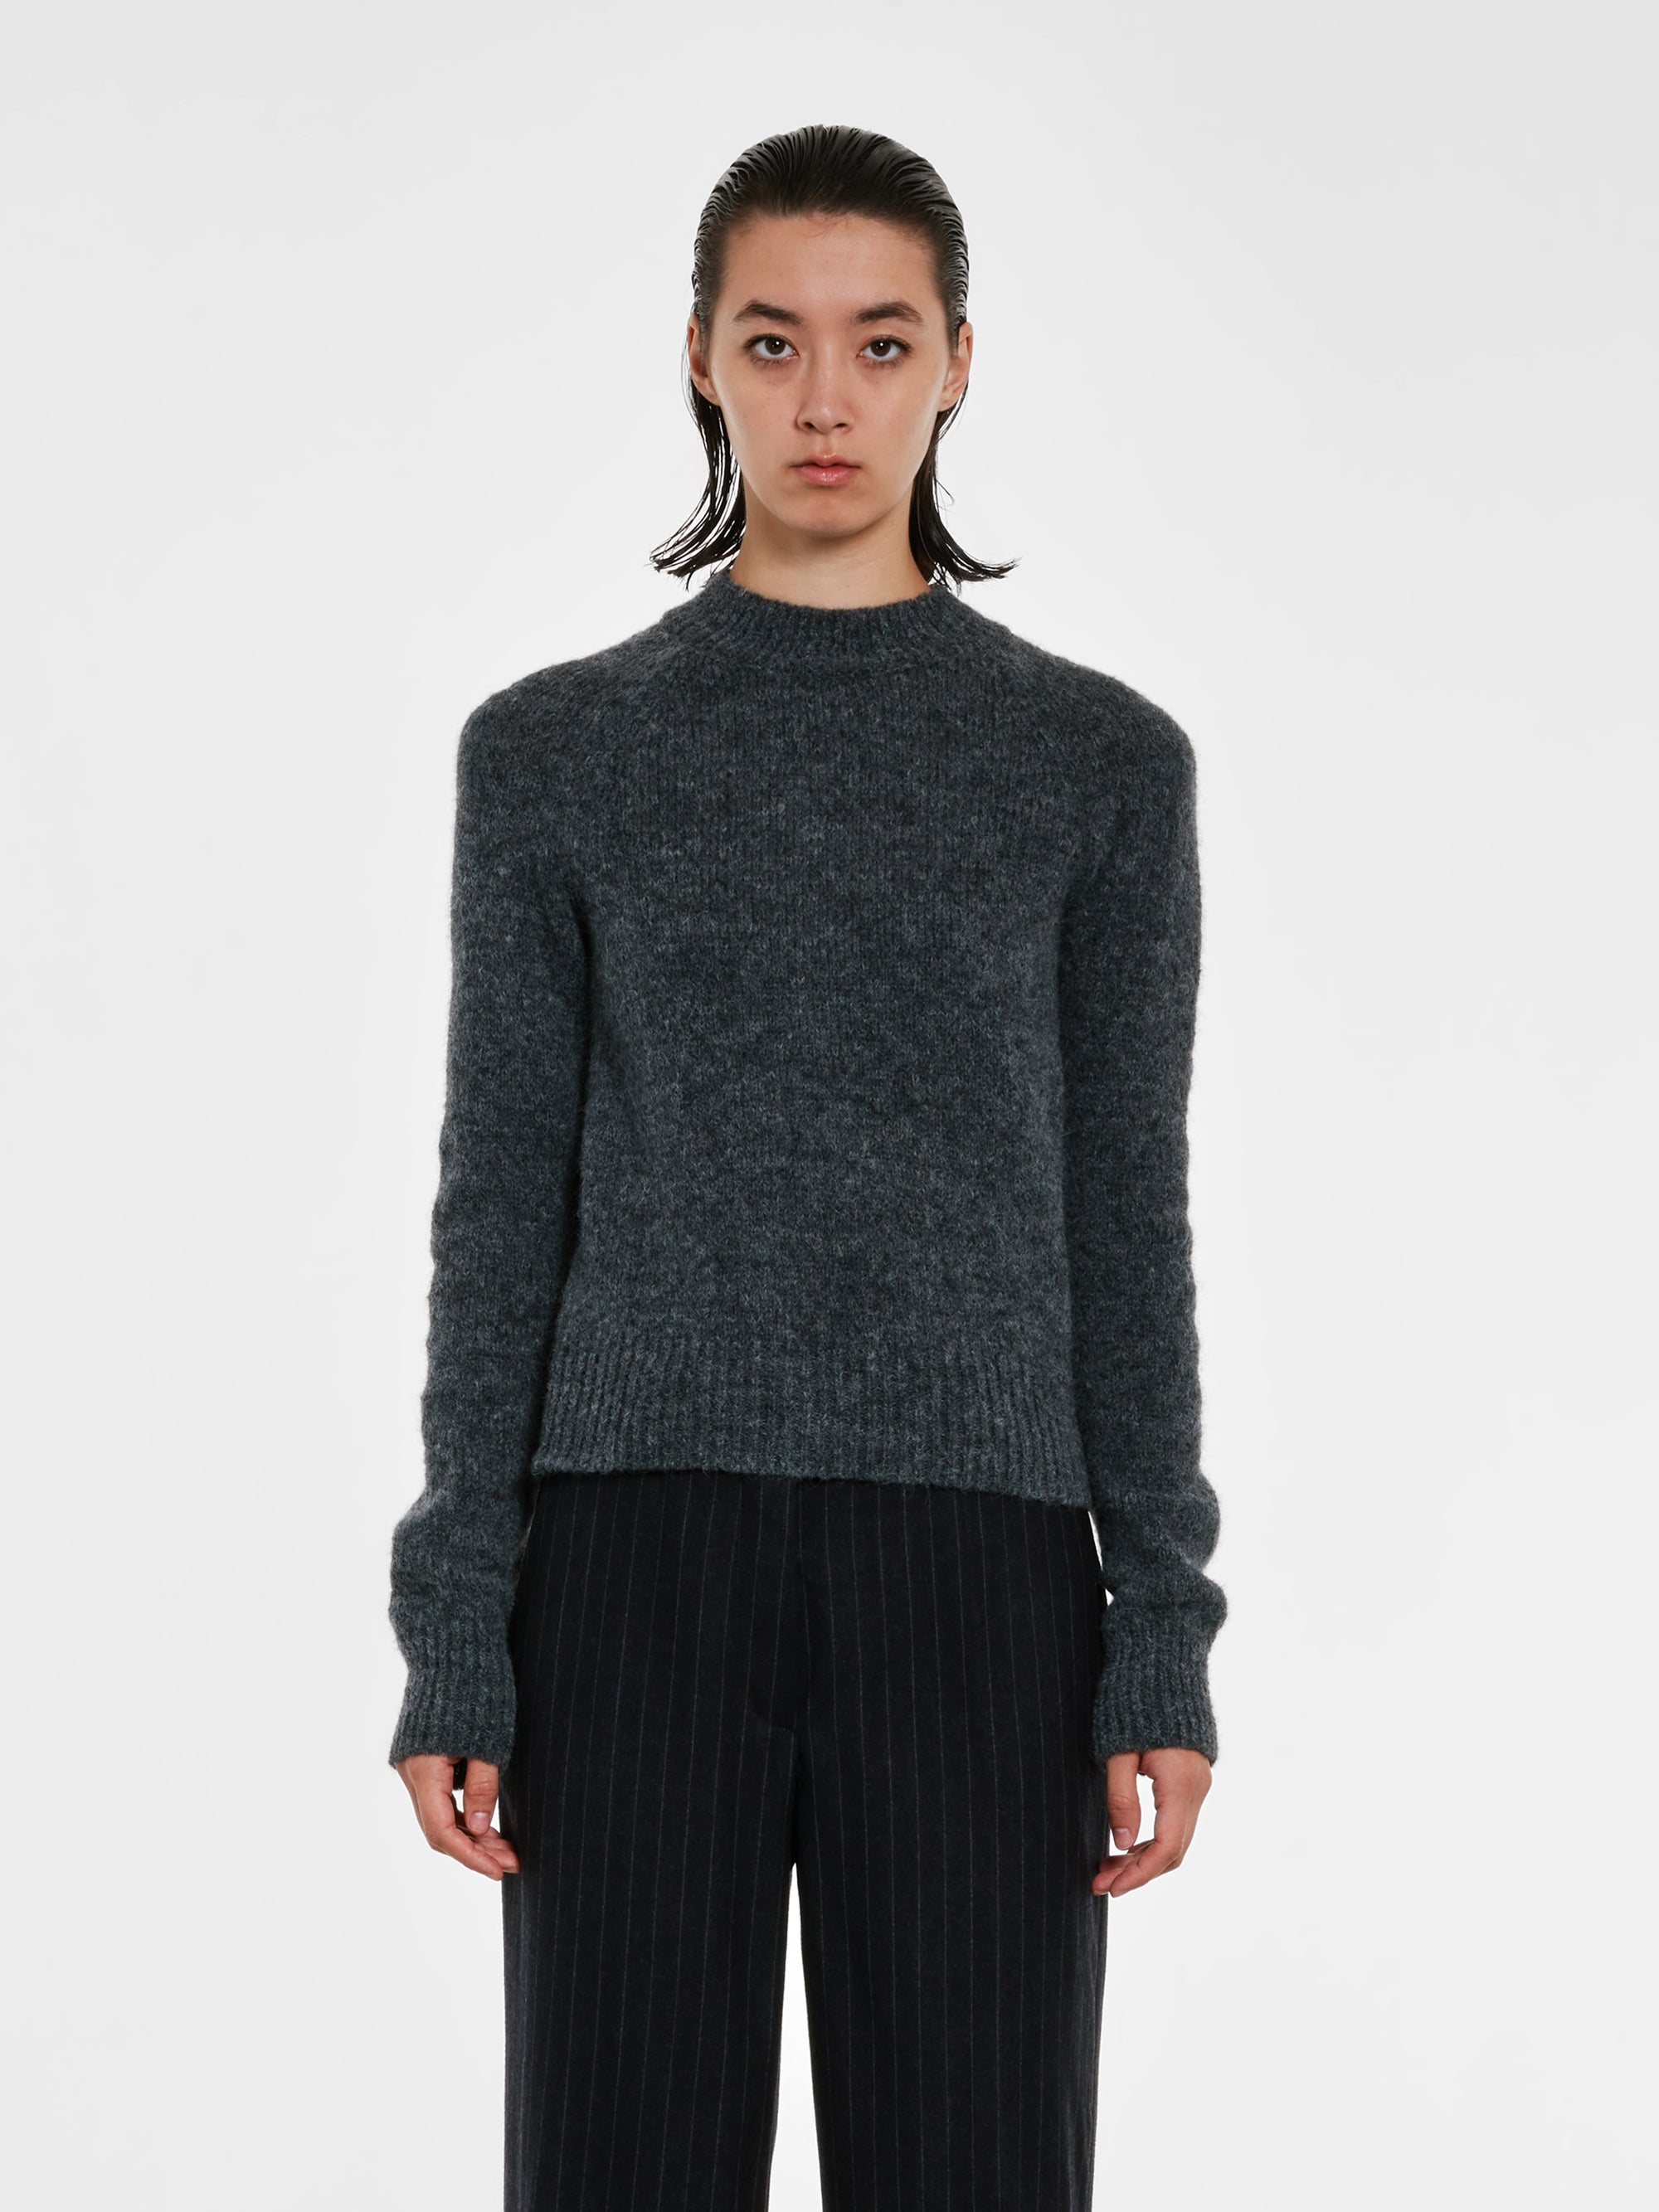 Dries Van Noten - Women’s Fitted Sweater - (Grey) view 1